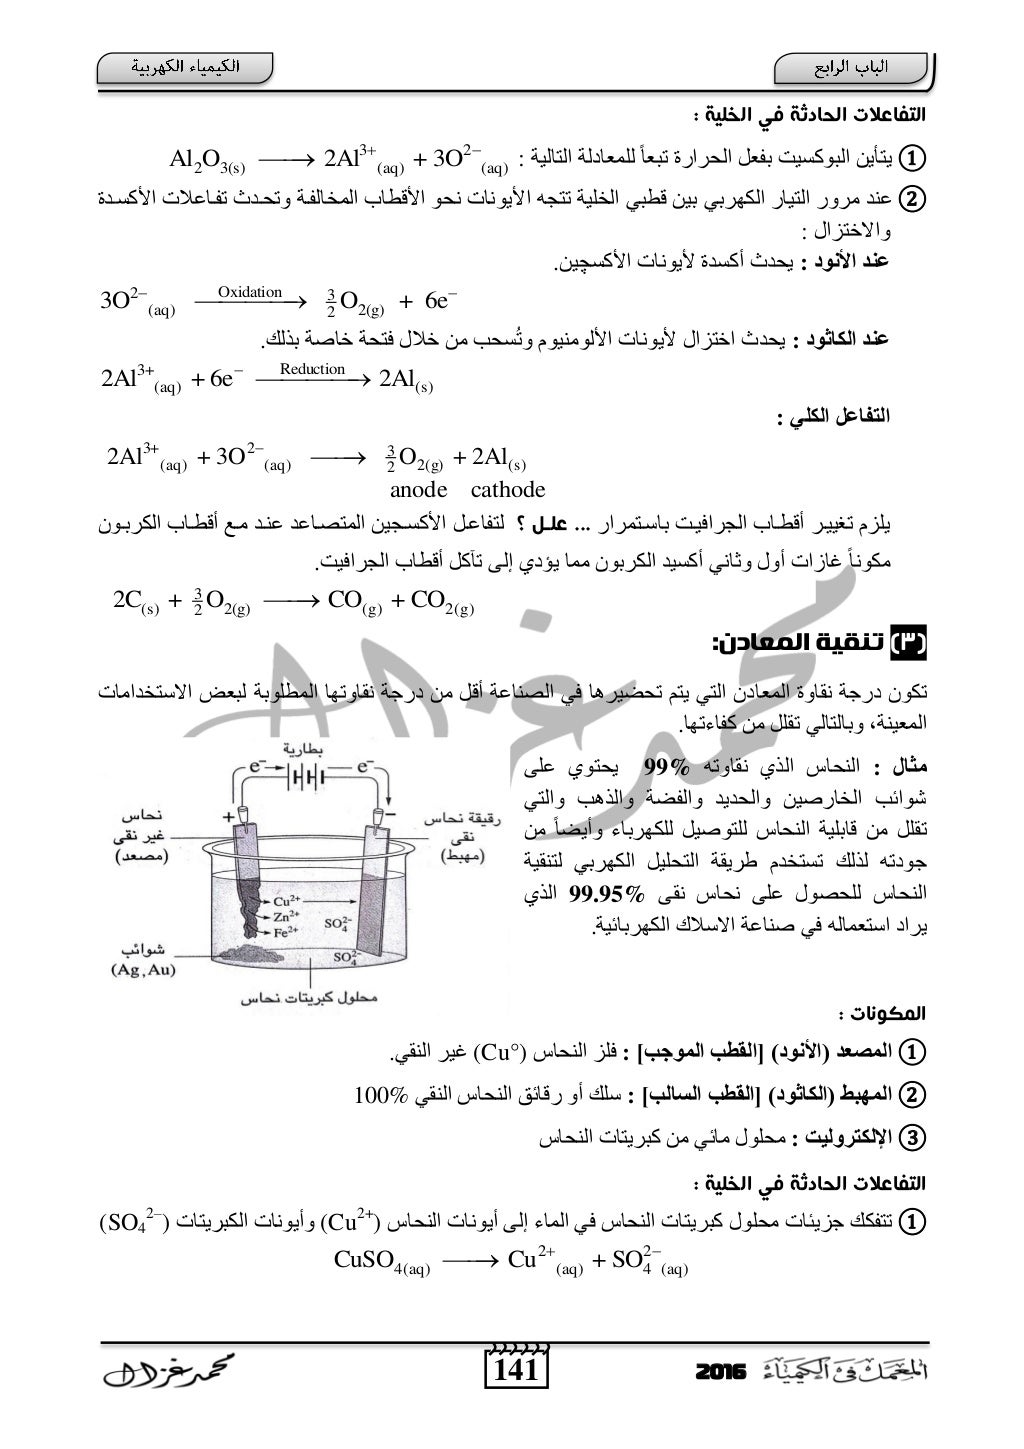 الكيمياء الكهربية للصف الثالث الثانوي أ- محمد غزال - ثانوية خمس نجوم 2016